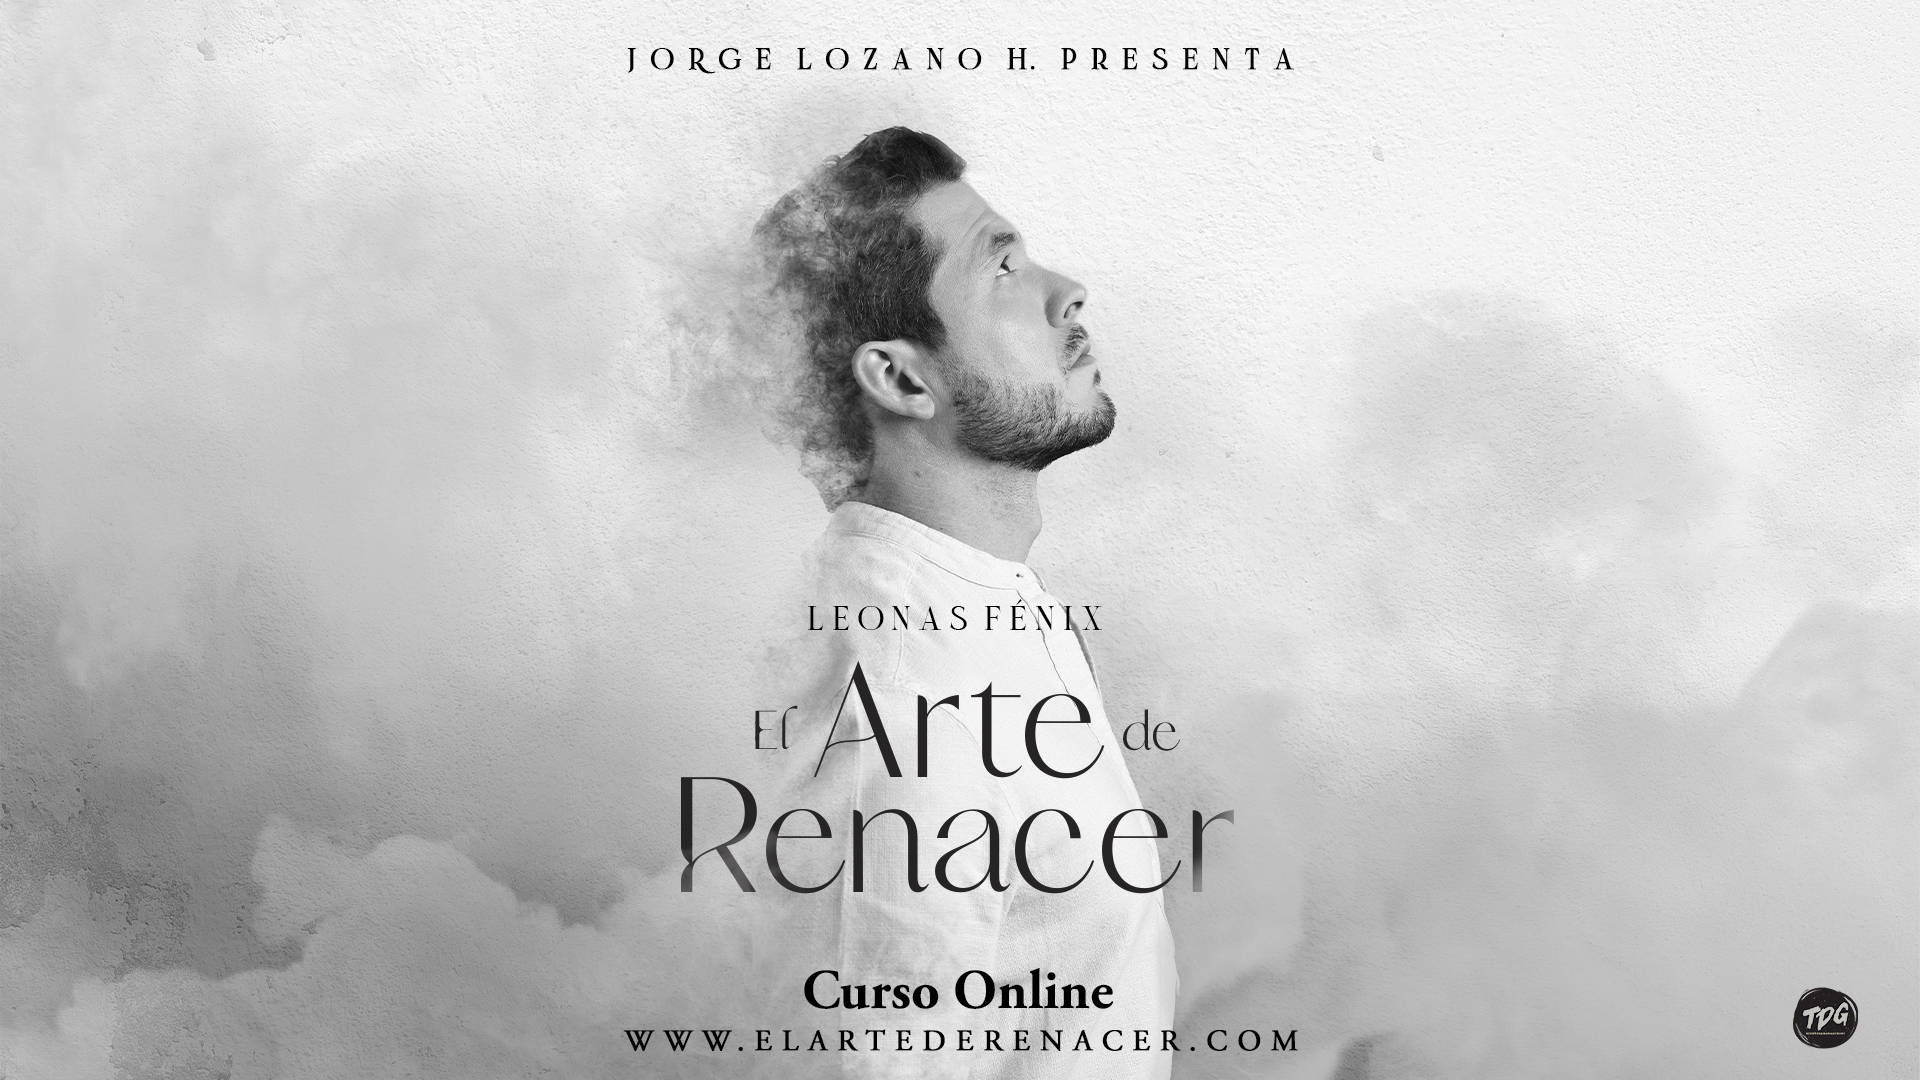 Jorge Lozano H. Estrena su nuevo curso on line  «Leonas Fénix: El Arte de Renacer»